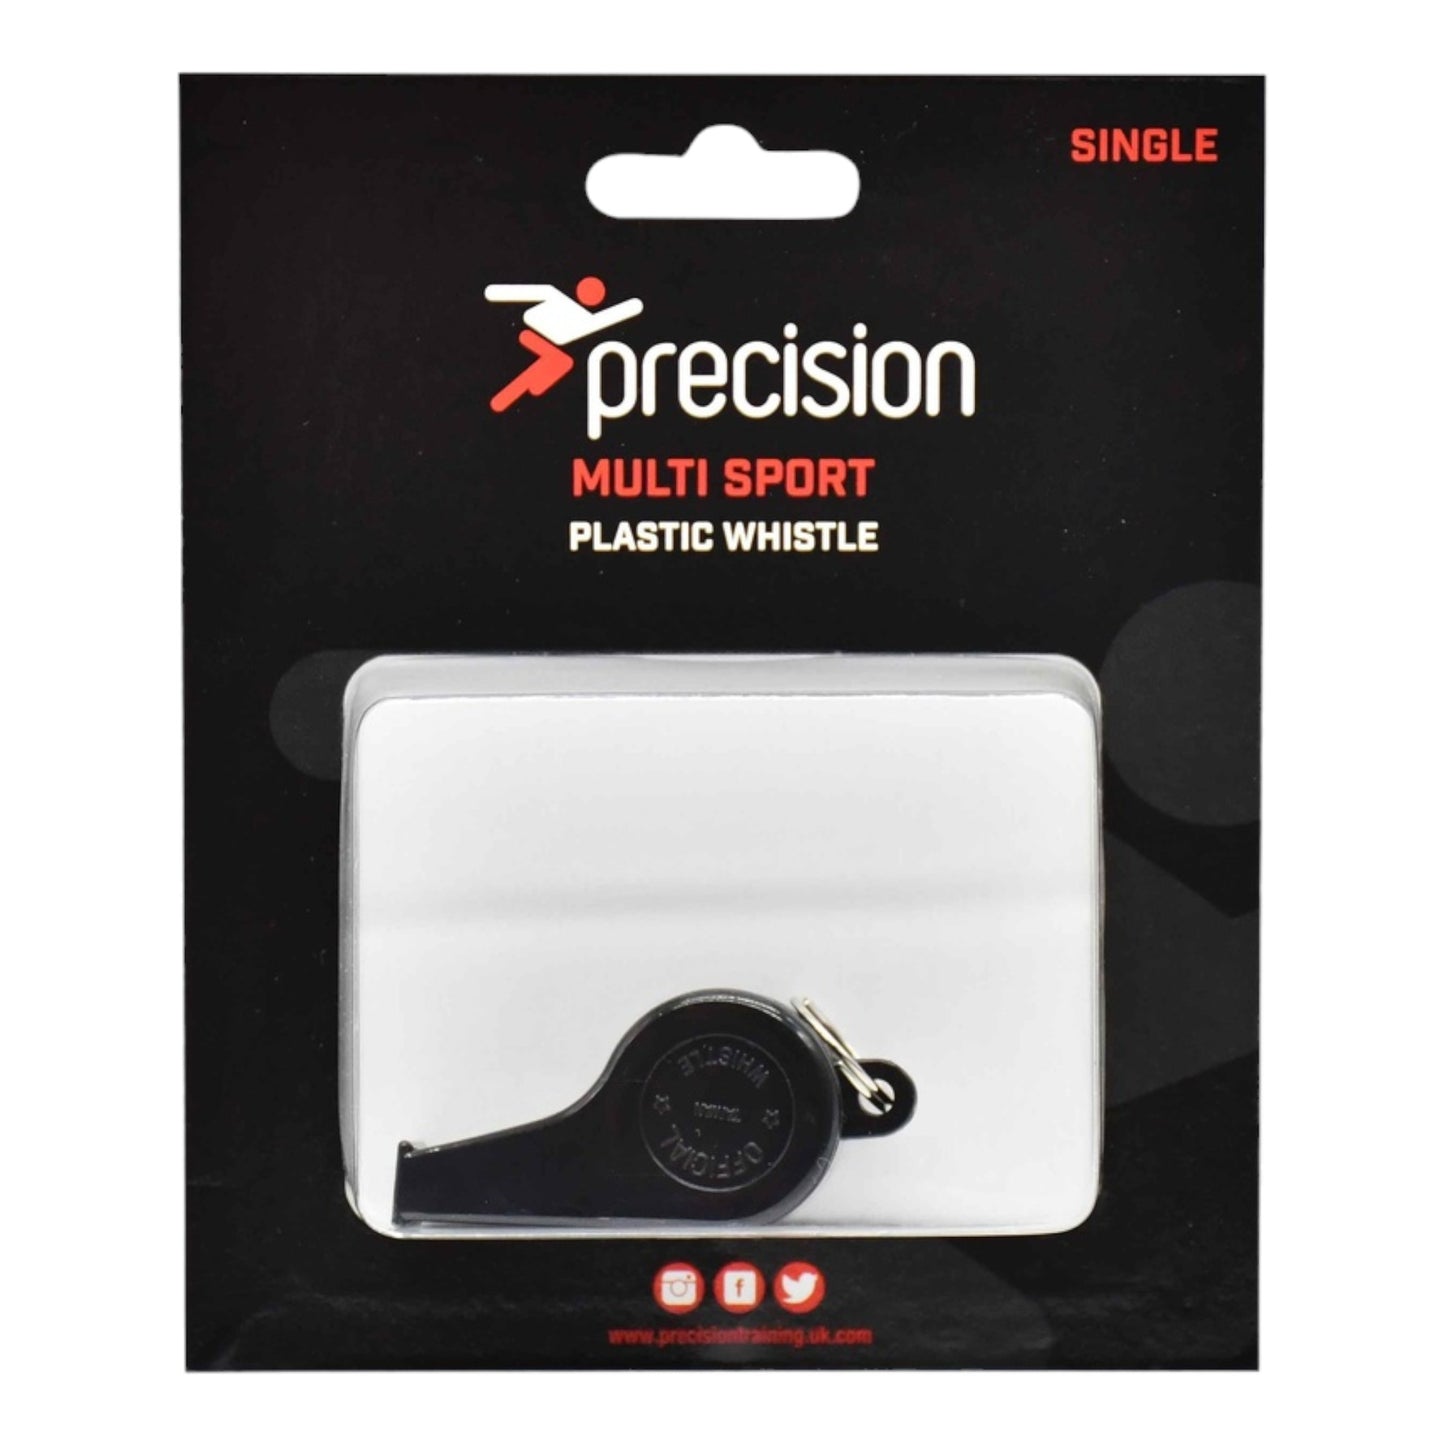 Precision Plastic Whistle (Single)